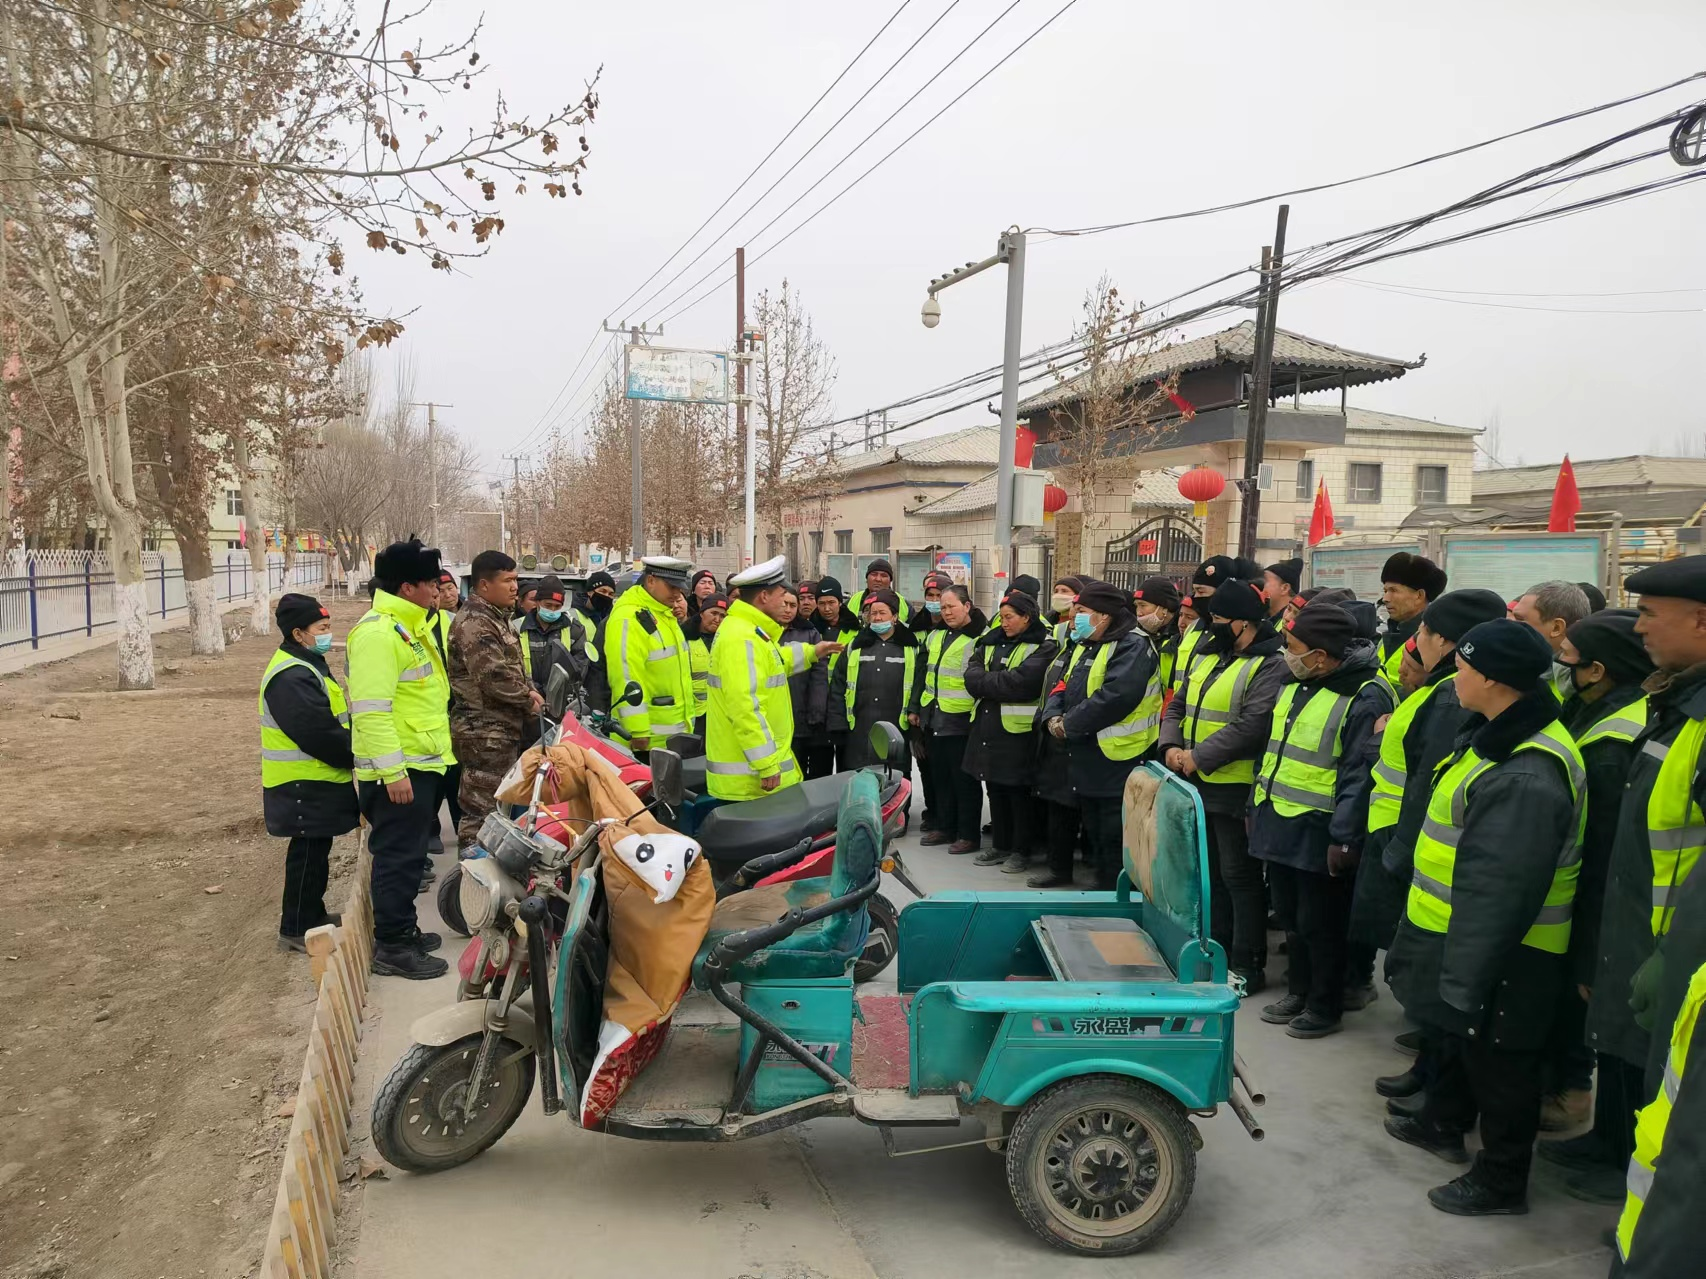 新疆莎车交警组织“两站两员”培训工作 深入农村开展交通安全宣传